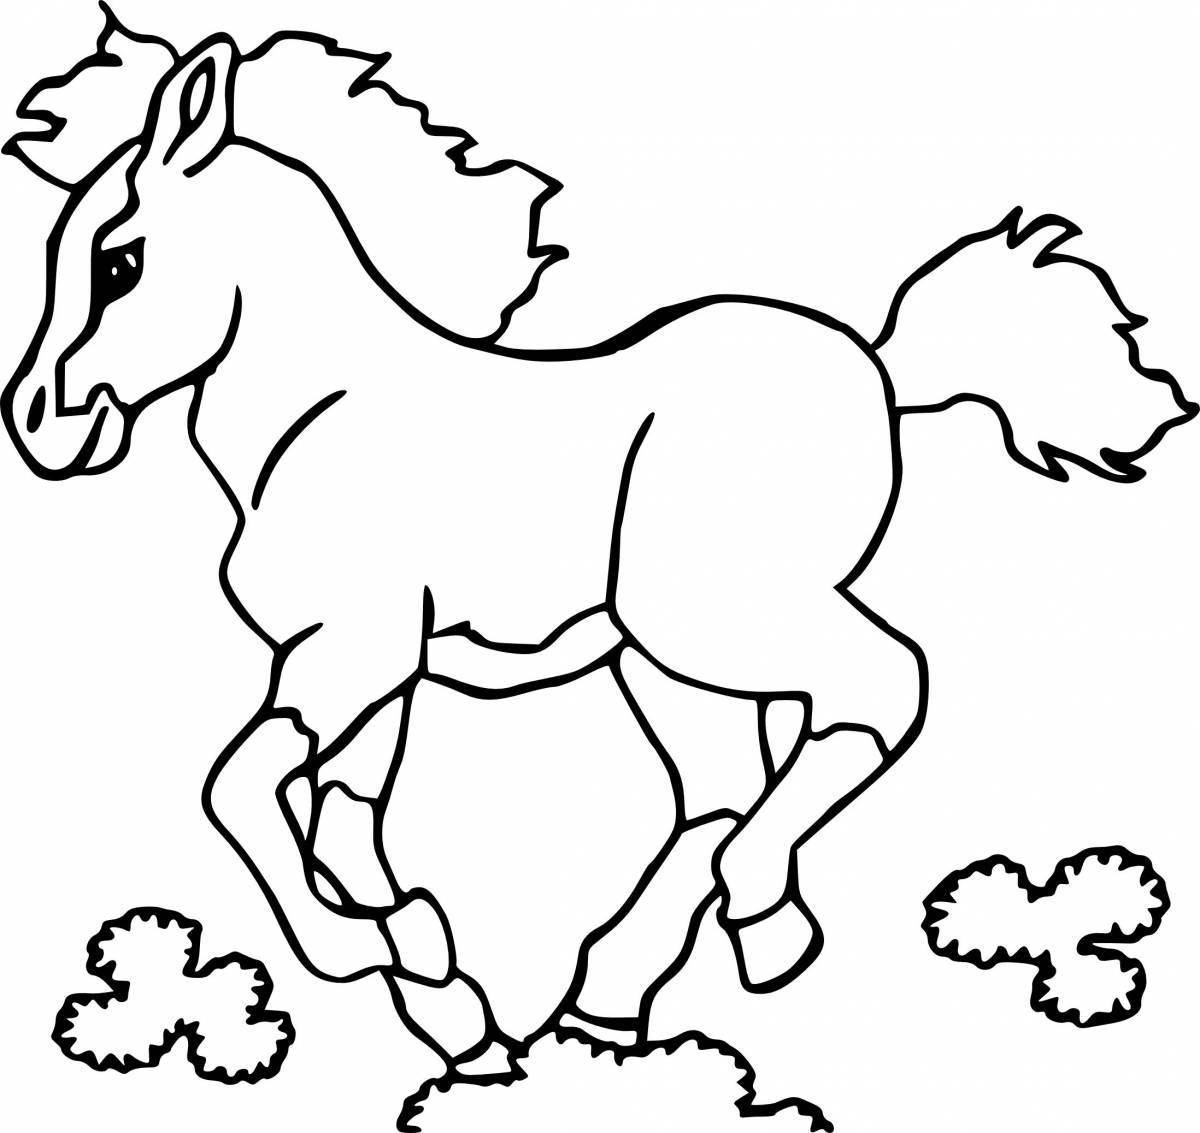 Великолепная раскраска лошадь для детей 2-3 лет